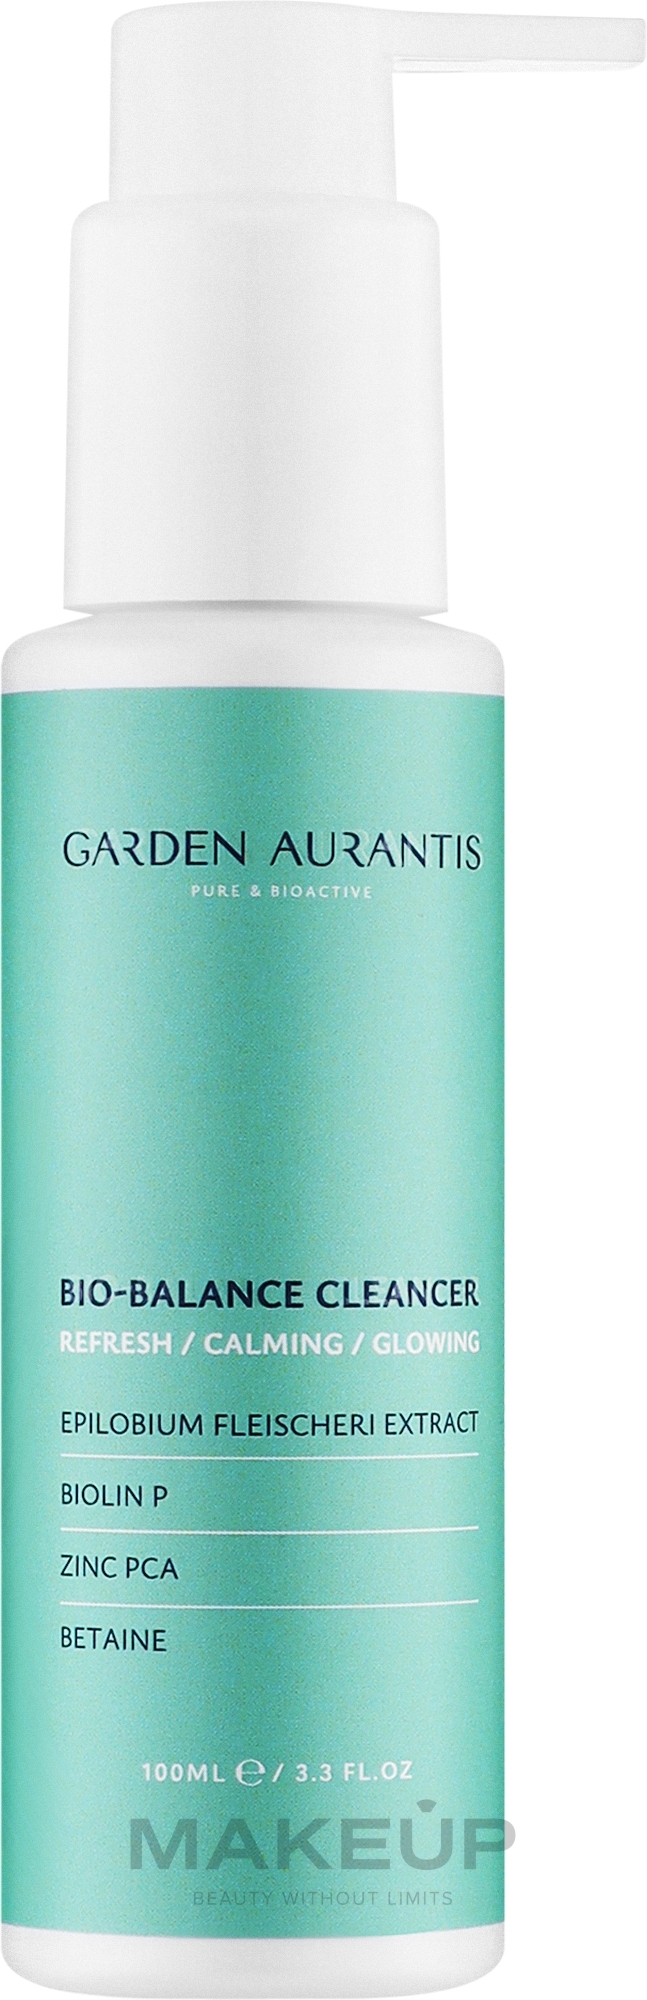 Мягкий очищающий гель с нейтральным Ph для сияния и здоровья кожи - Garden Aurantis Bio-balance Cleancer — фото 100ml